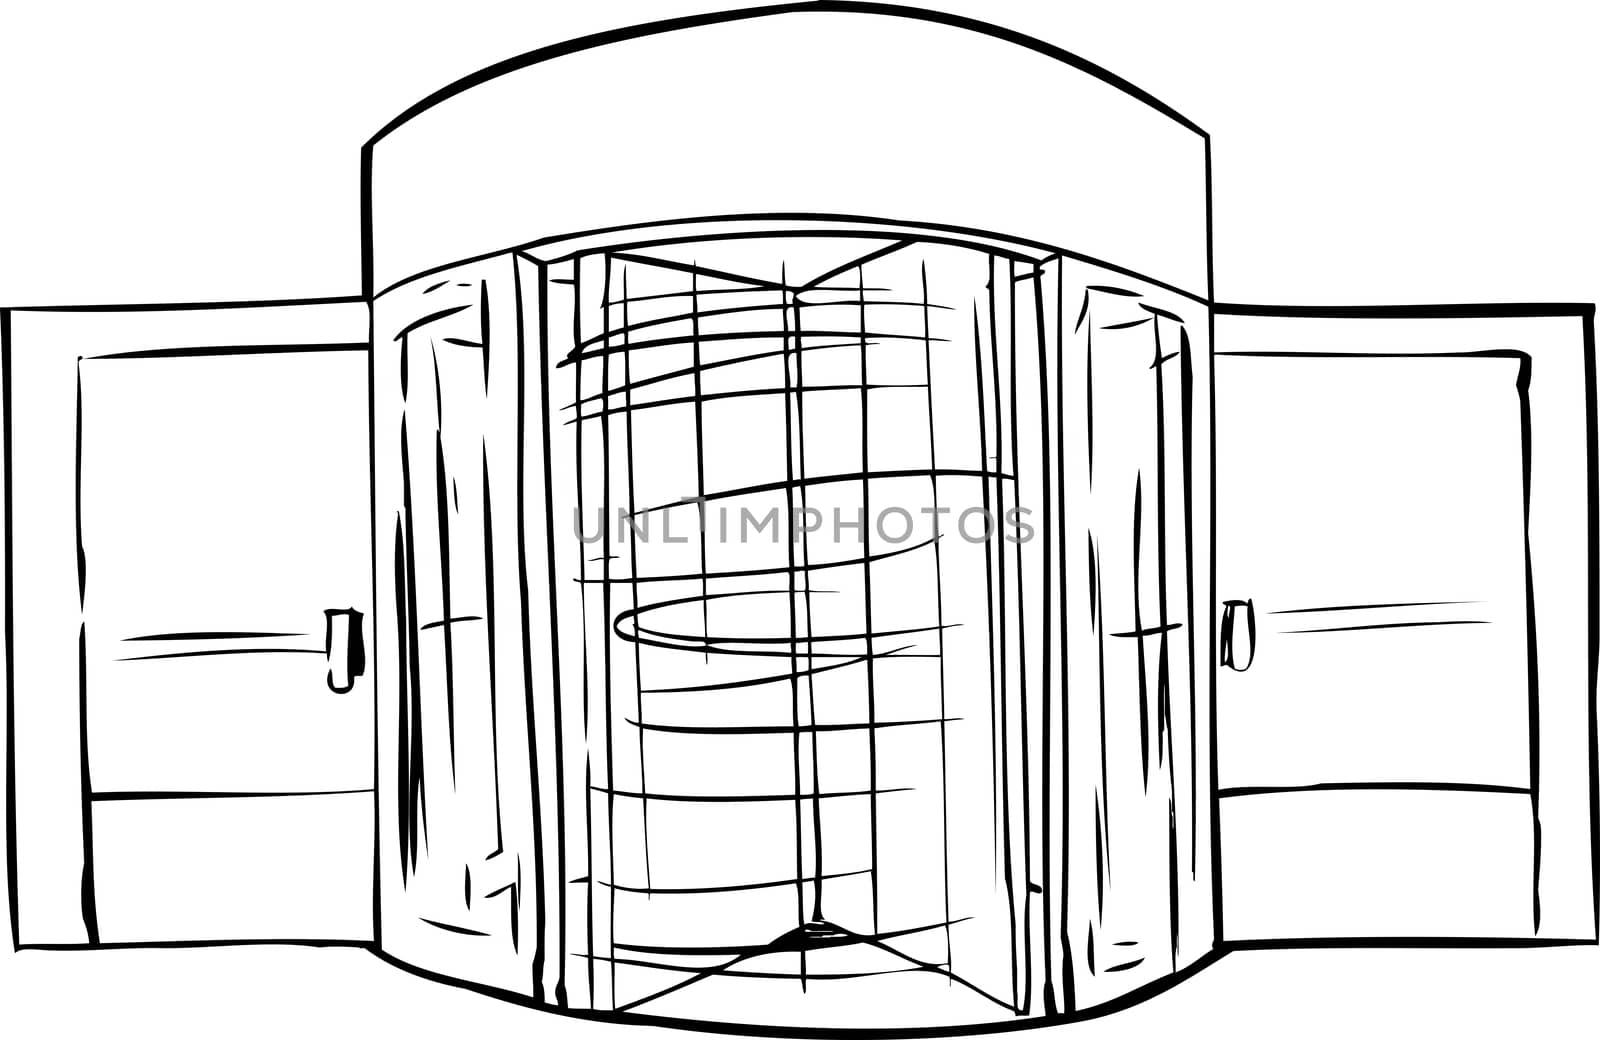 Hand drawn illustration of spinning revolving door outline